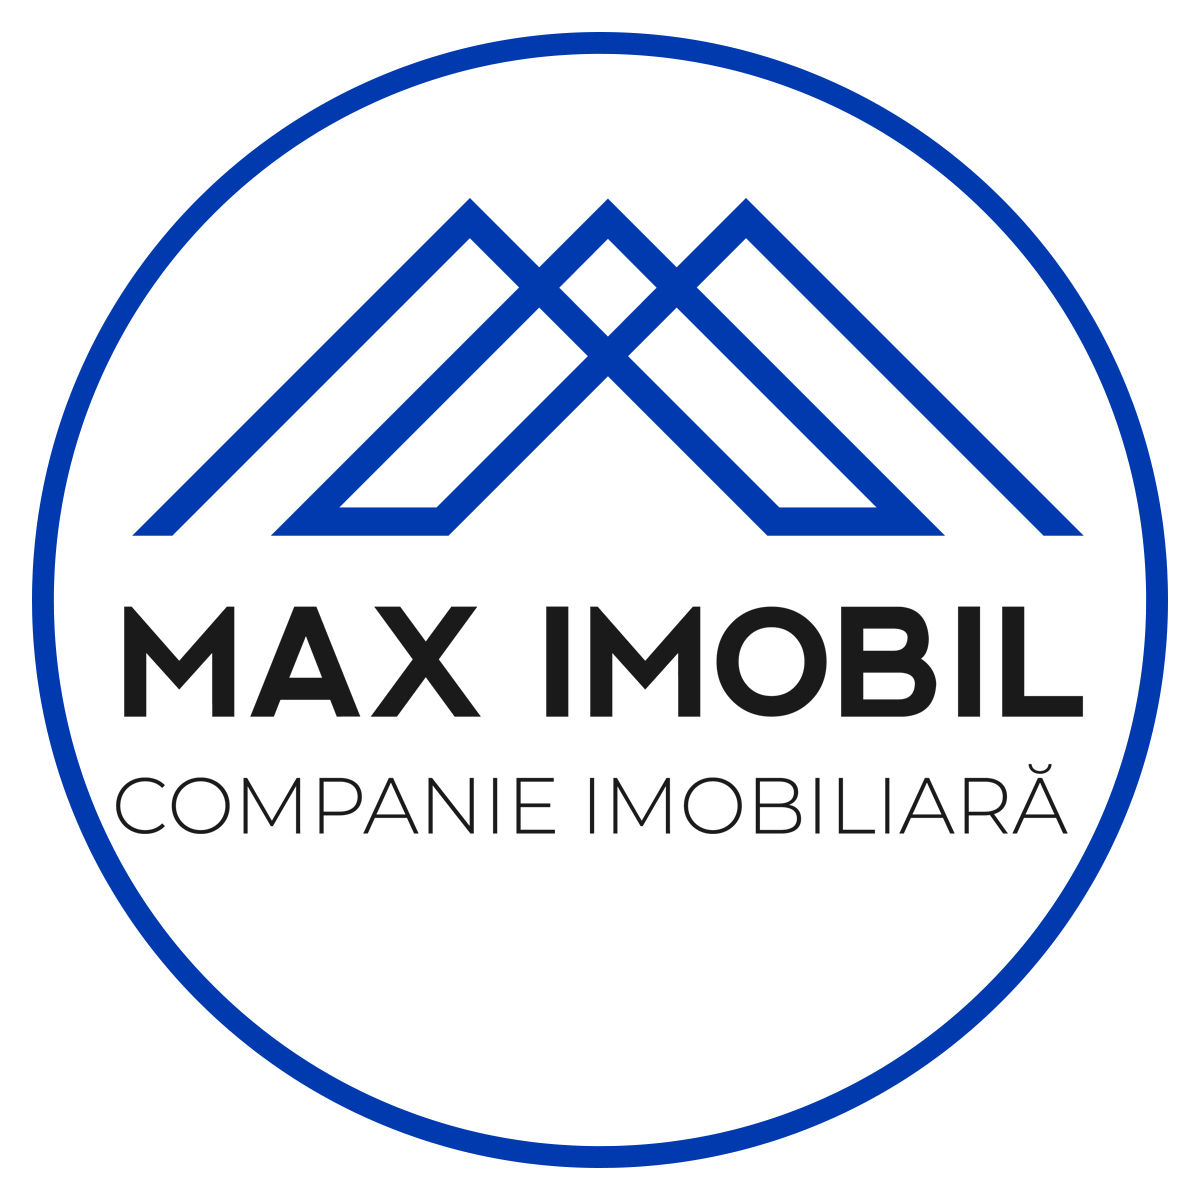 Max Imobil